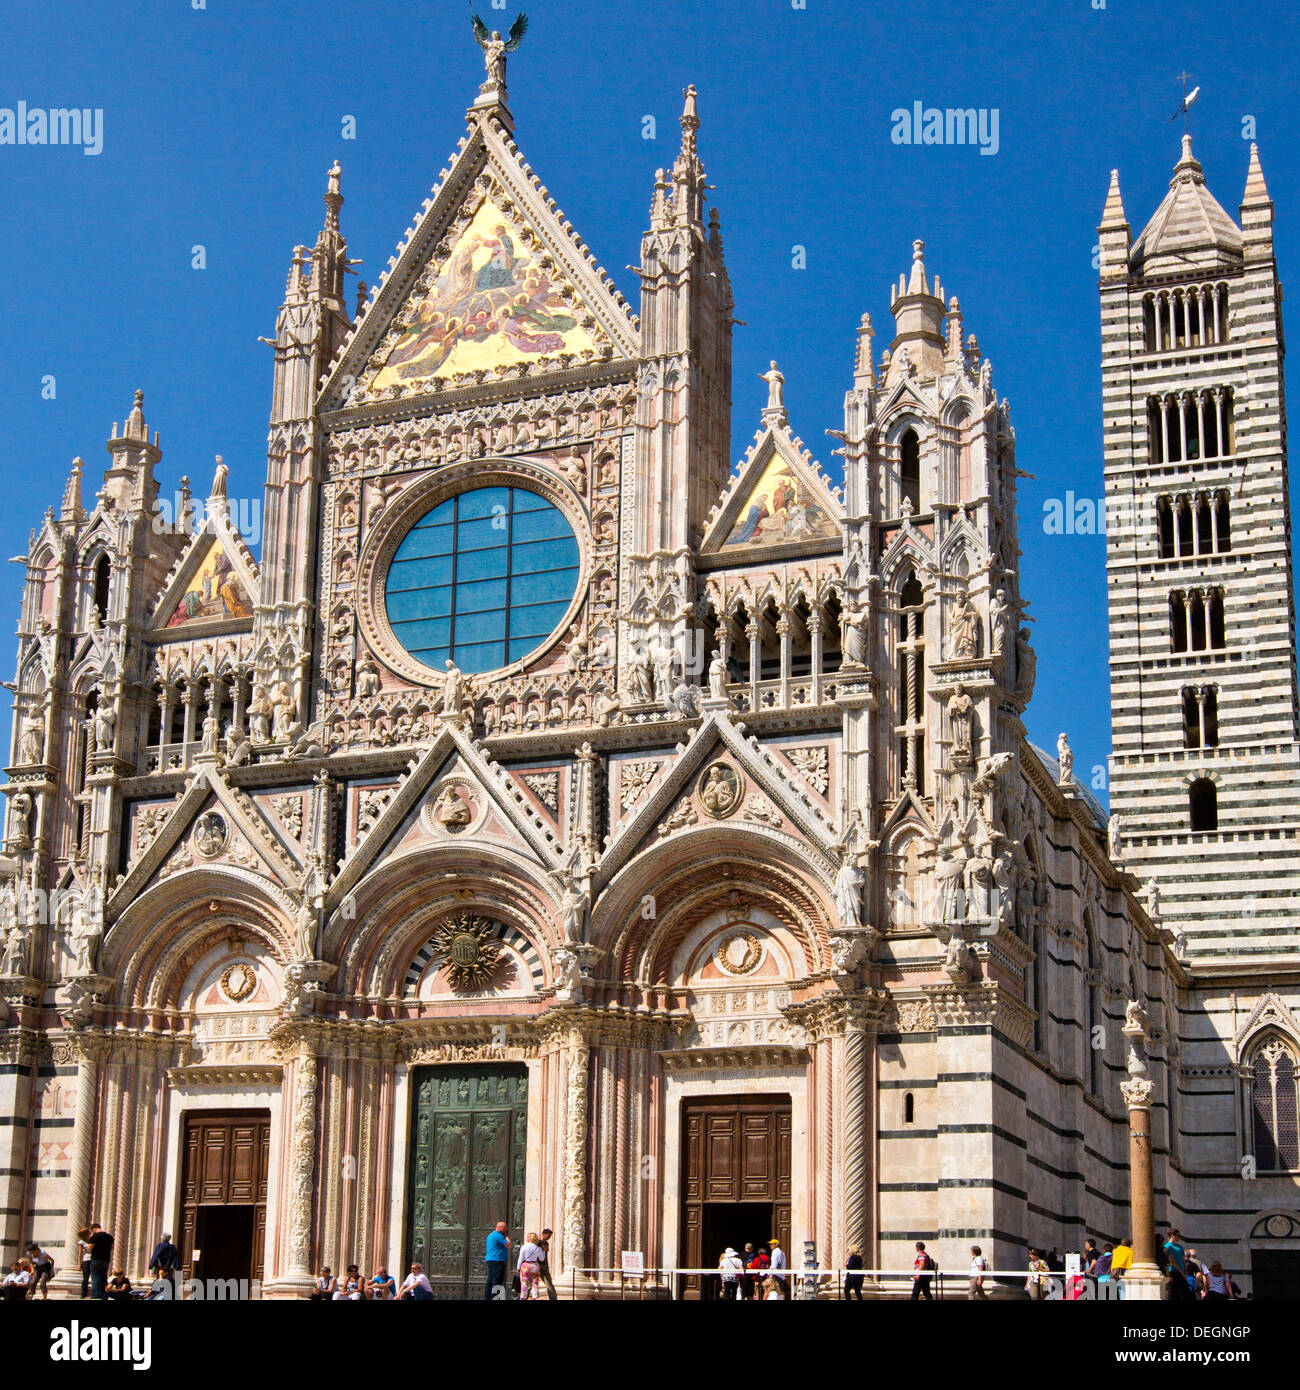 Façade d'une cathédrale, le Duomo di Siena, Sienne, Toscane, Italie Banque D'Images